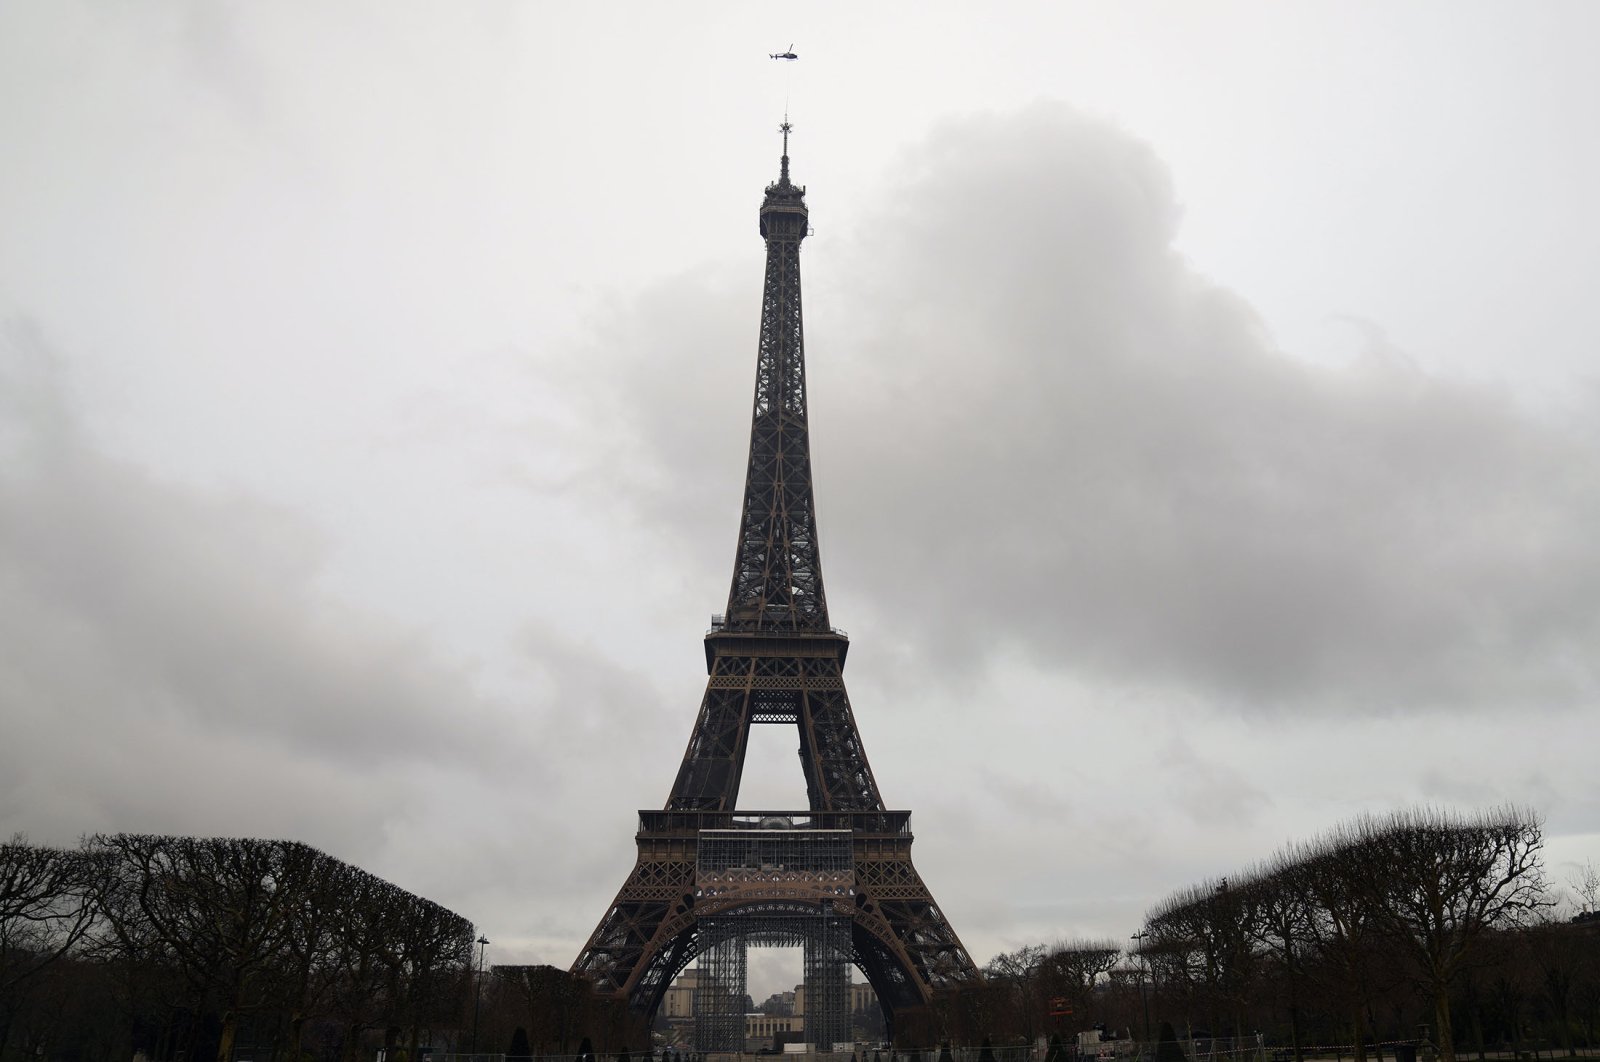 Menara Eiffel tumbuh lebih tinggi dengan antena baru